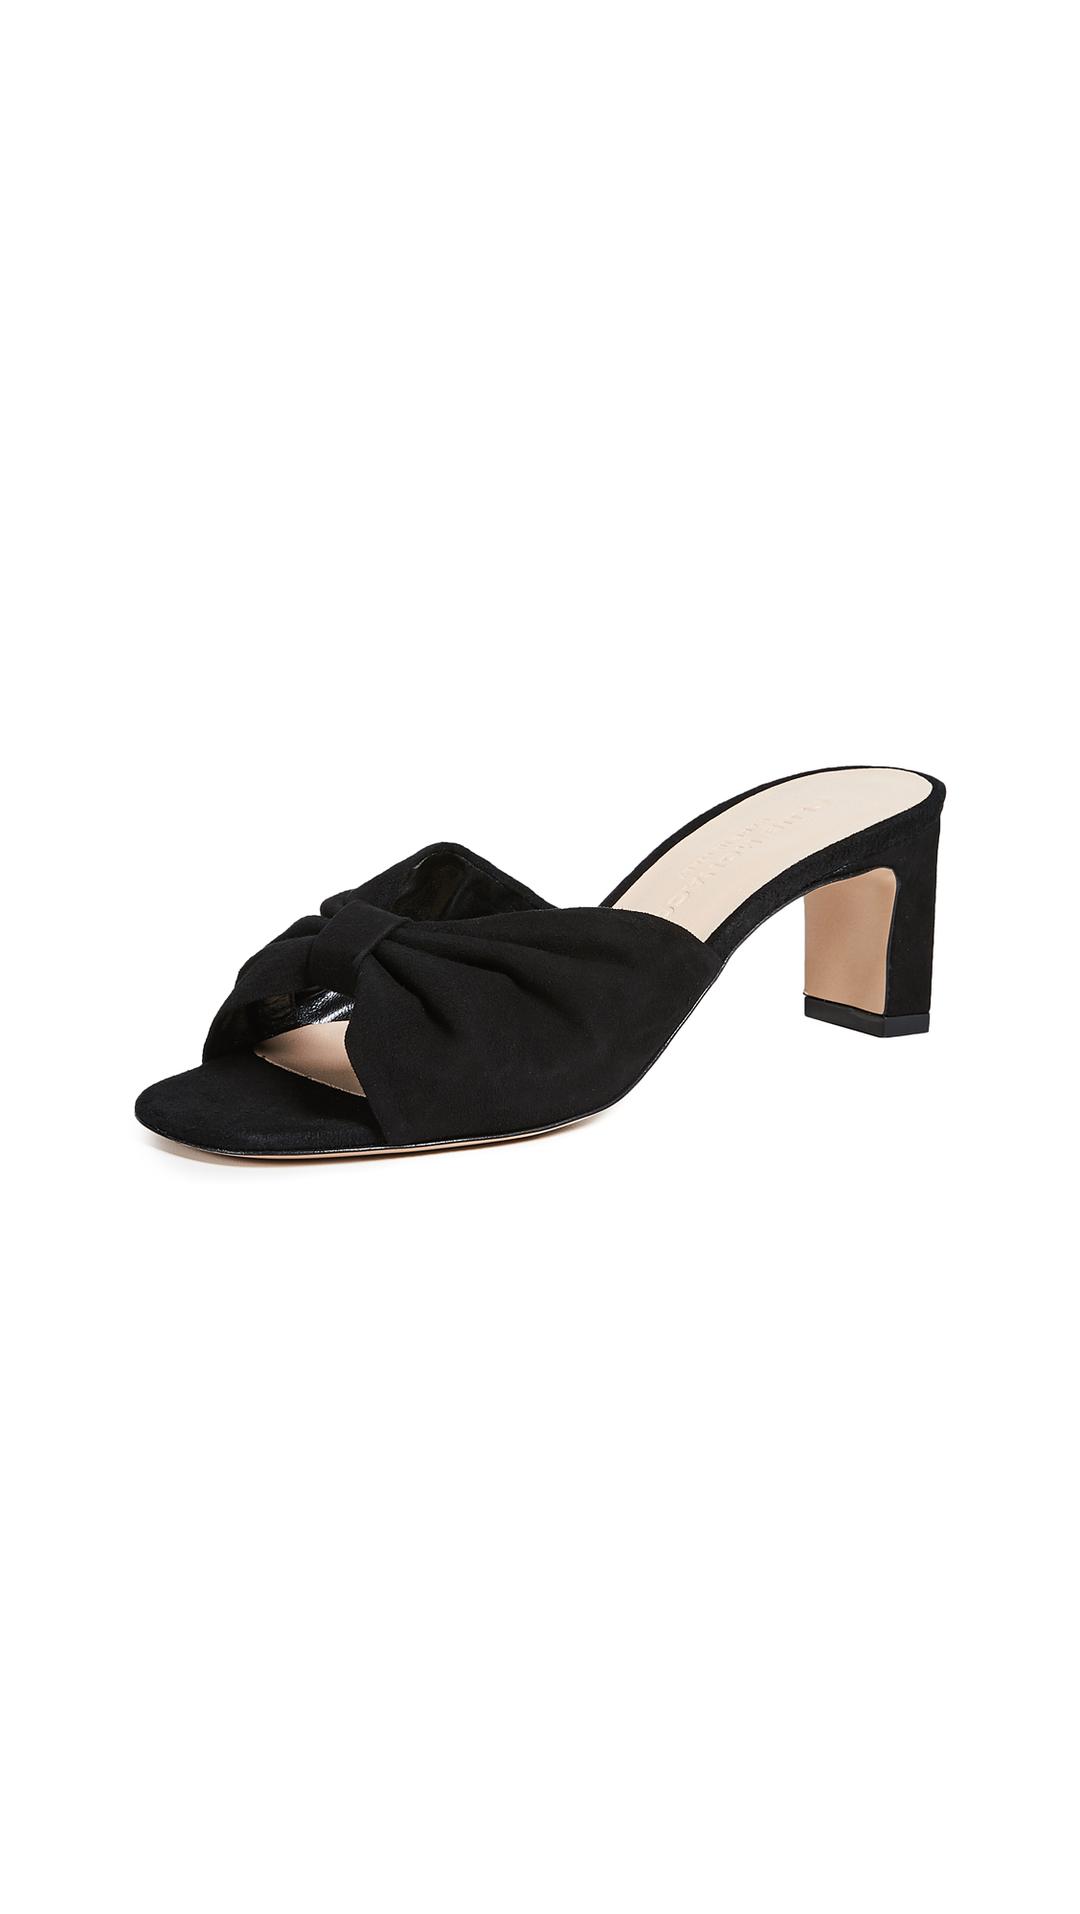 Buy > heel sandal black > in stock